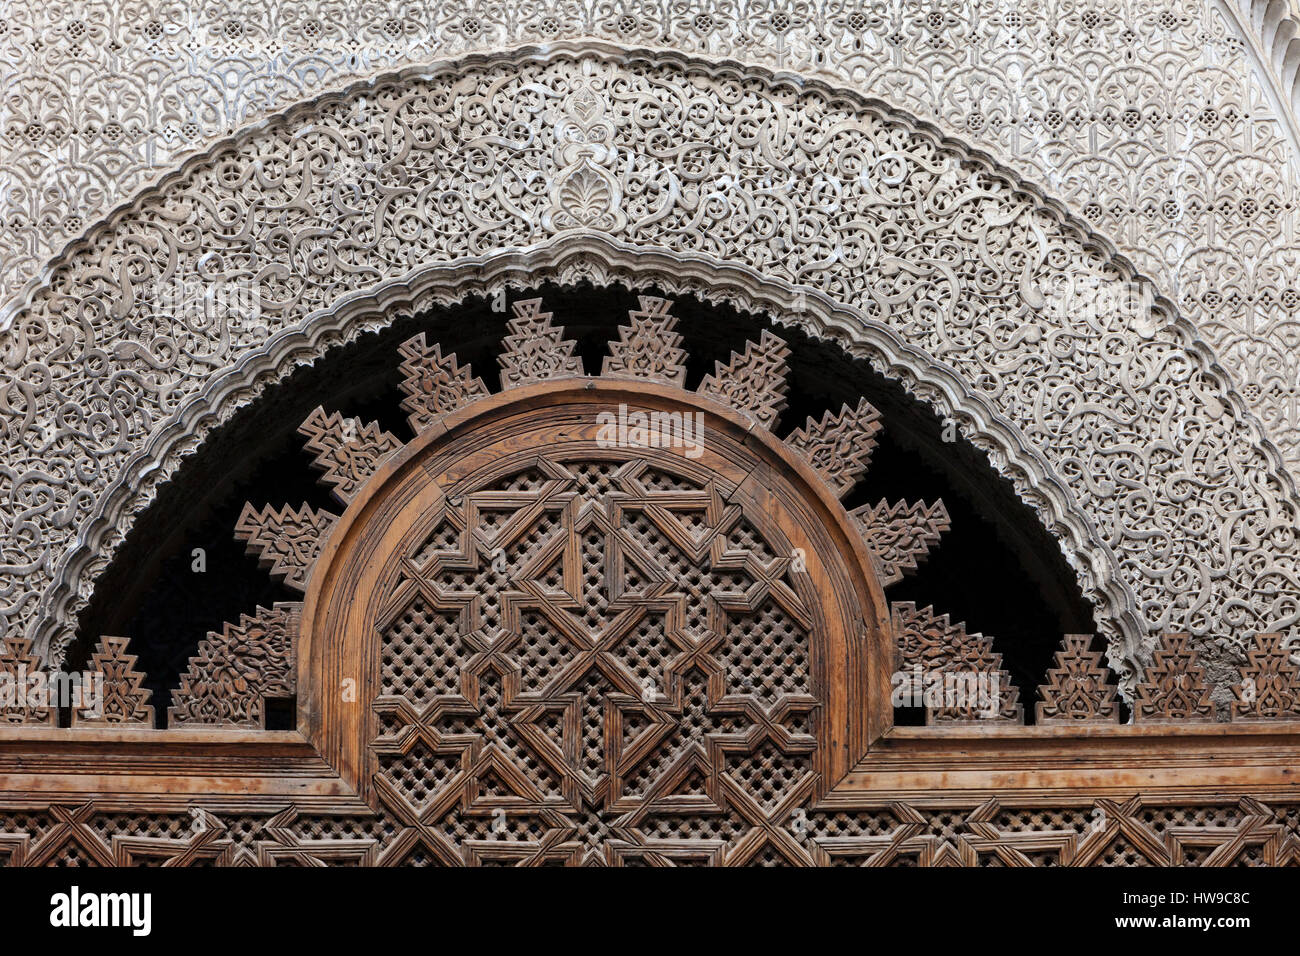 Fes, Maroc. Boiseries sculptées et des décorations en stuc de la Médersa Attarine, Fès El-Bali. Banque D'Images